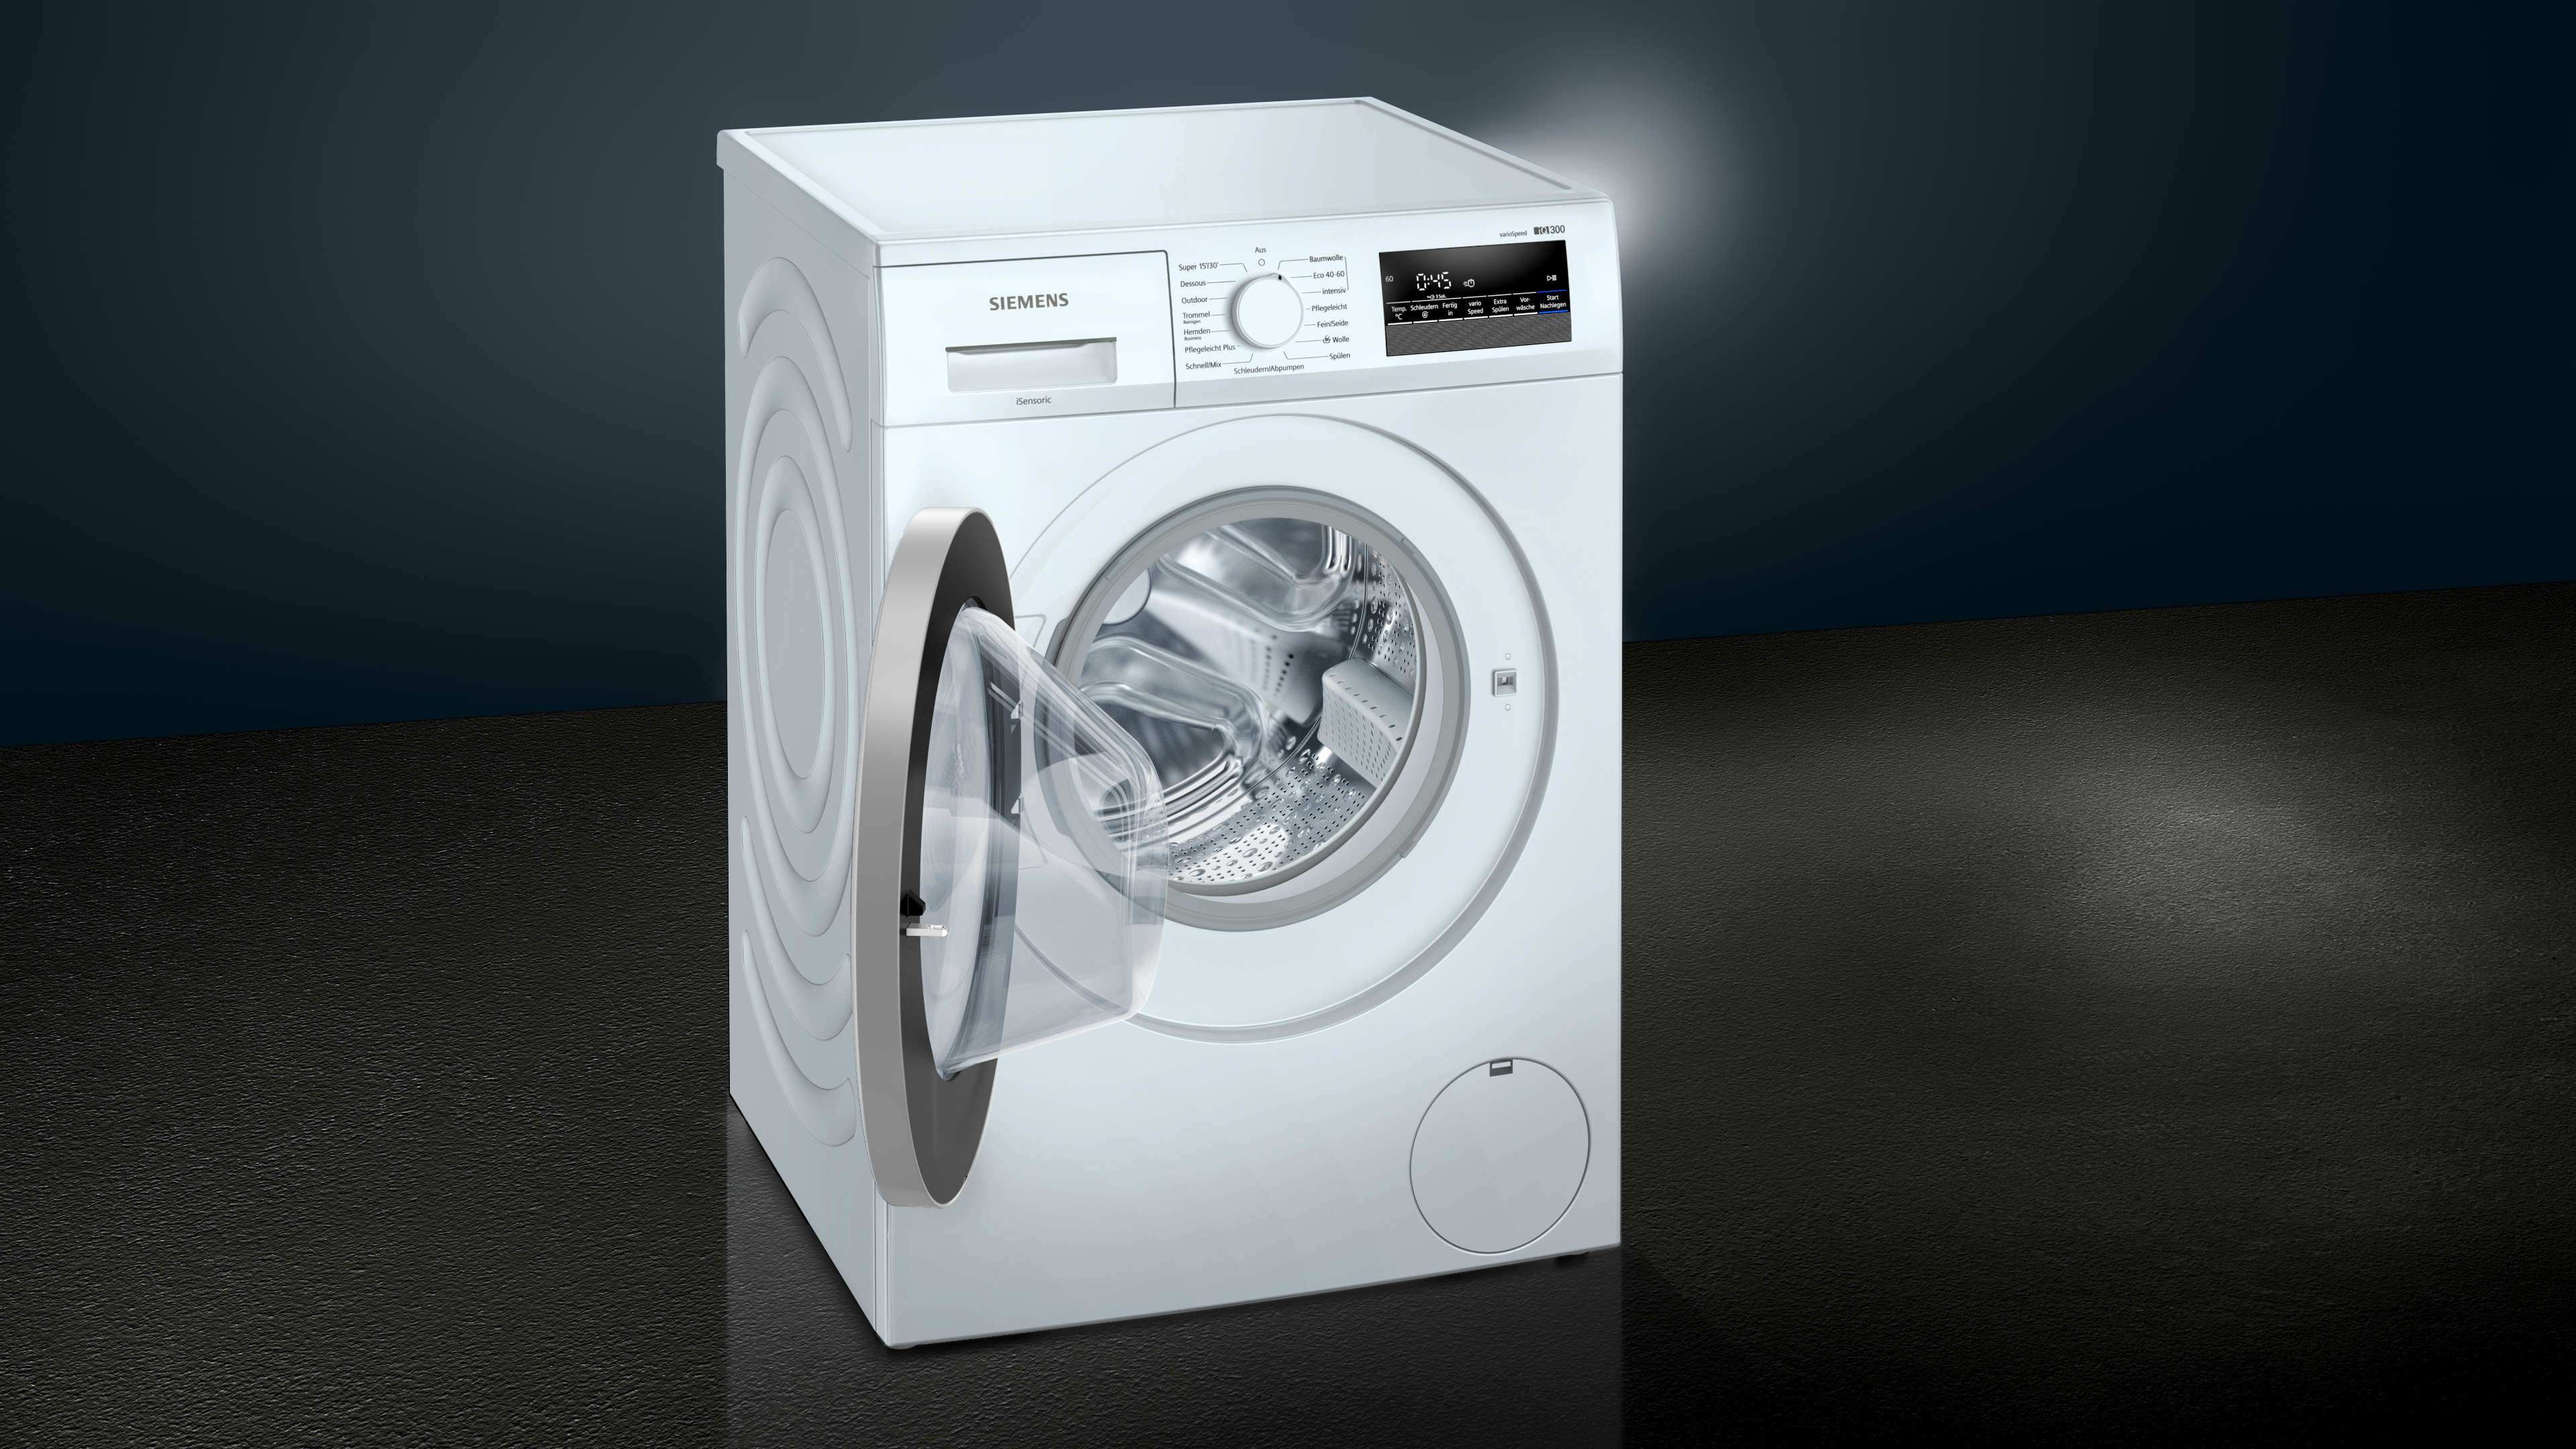 SIEMENS WM14NK20 C) 1400 iQ300 Waschmaschine U/Min., (8 kg